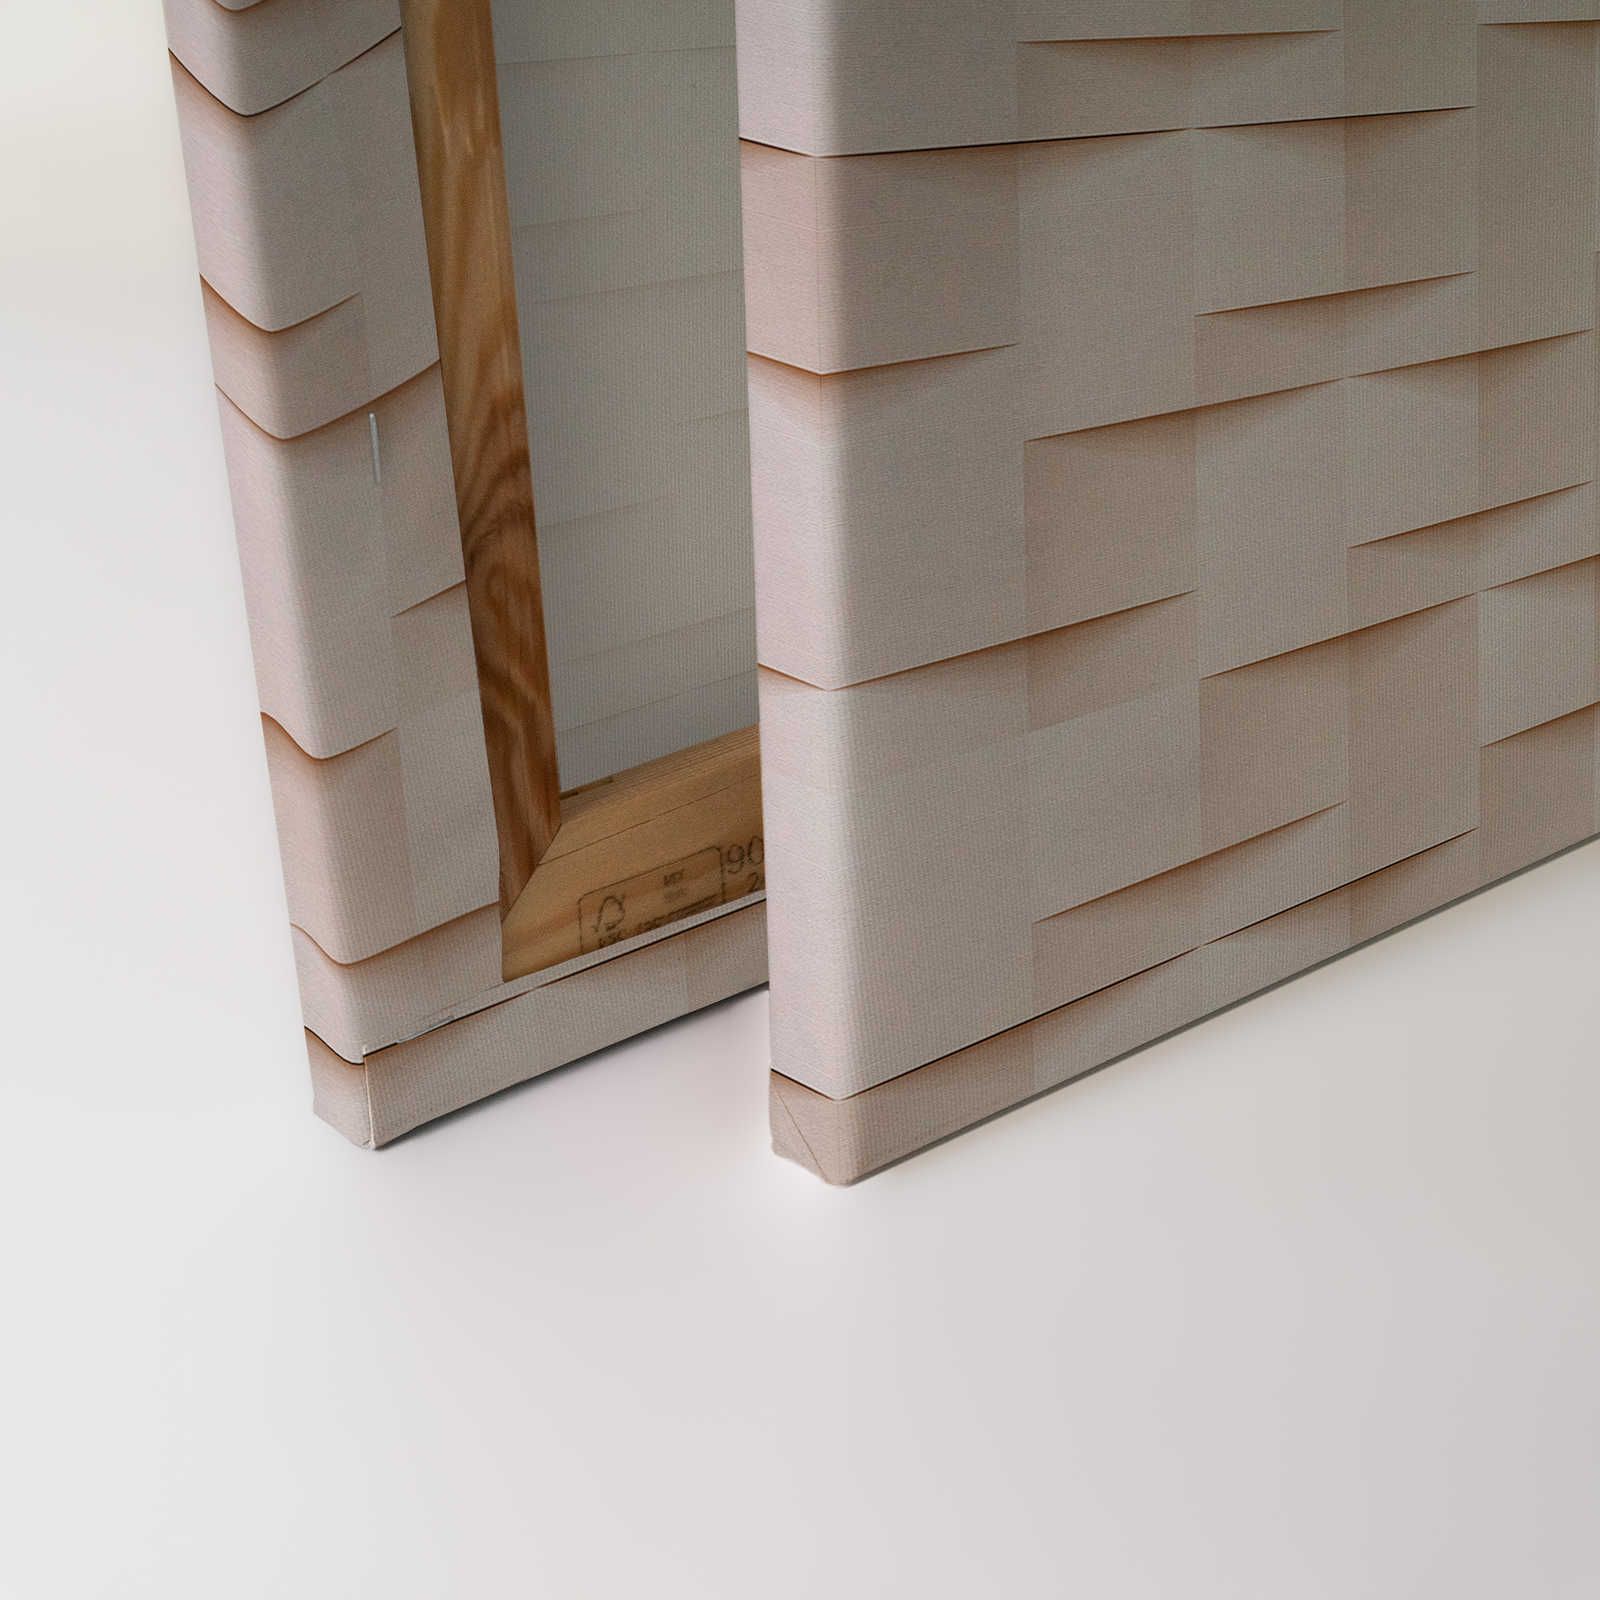             Paper House 1 - Toile 3D structure papier origami plissé - 0,90 m x 0,60 m
        